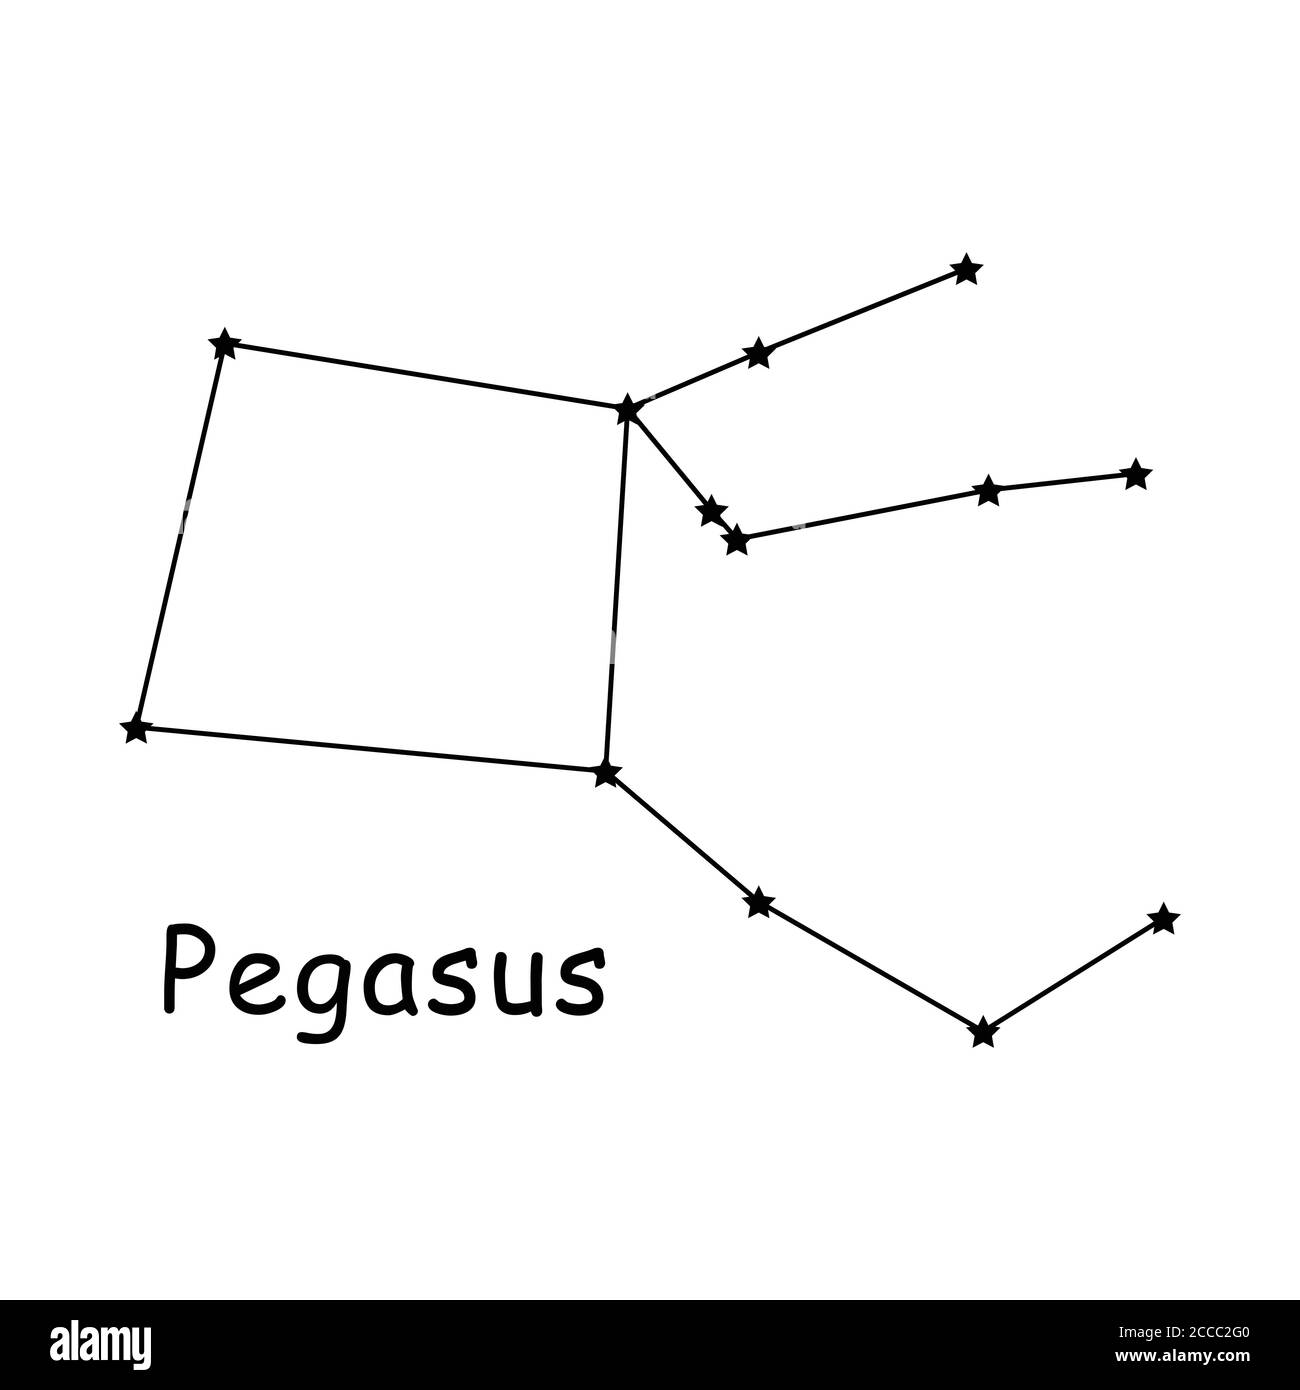 Pegasus Sternbild Vektor-Symbol Piktogramm mit Beschreibung Text. Kunstwerk der griechischen Mythologie Pegasus Konstellation im Nachthimmel Stock Vektor